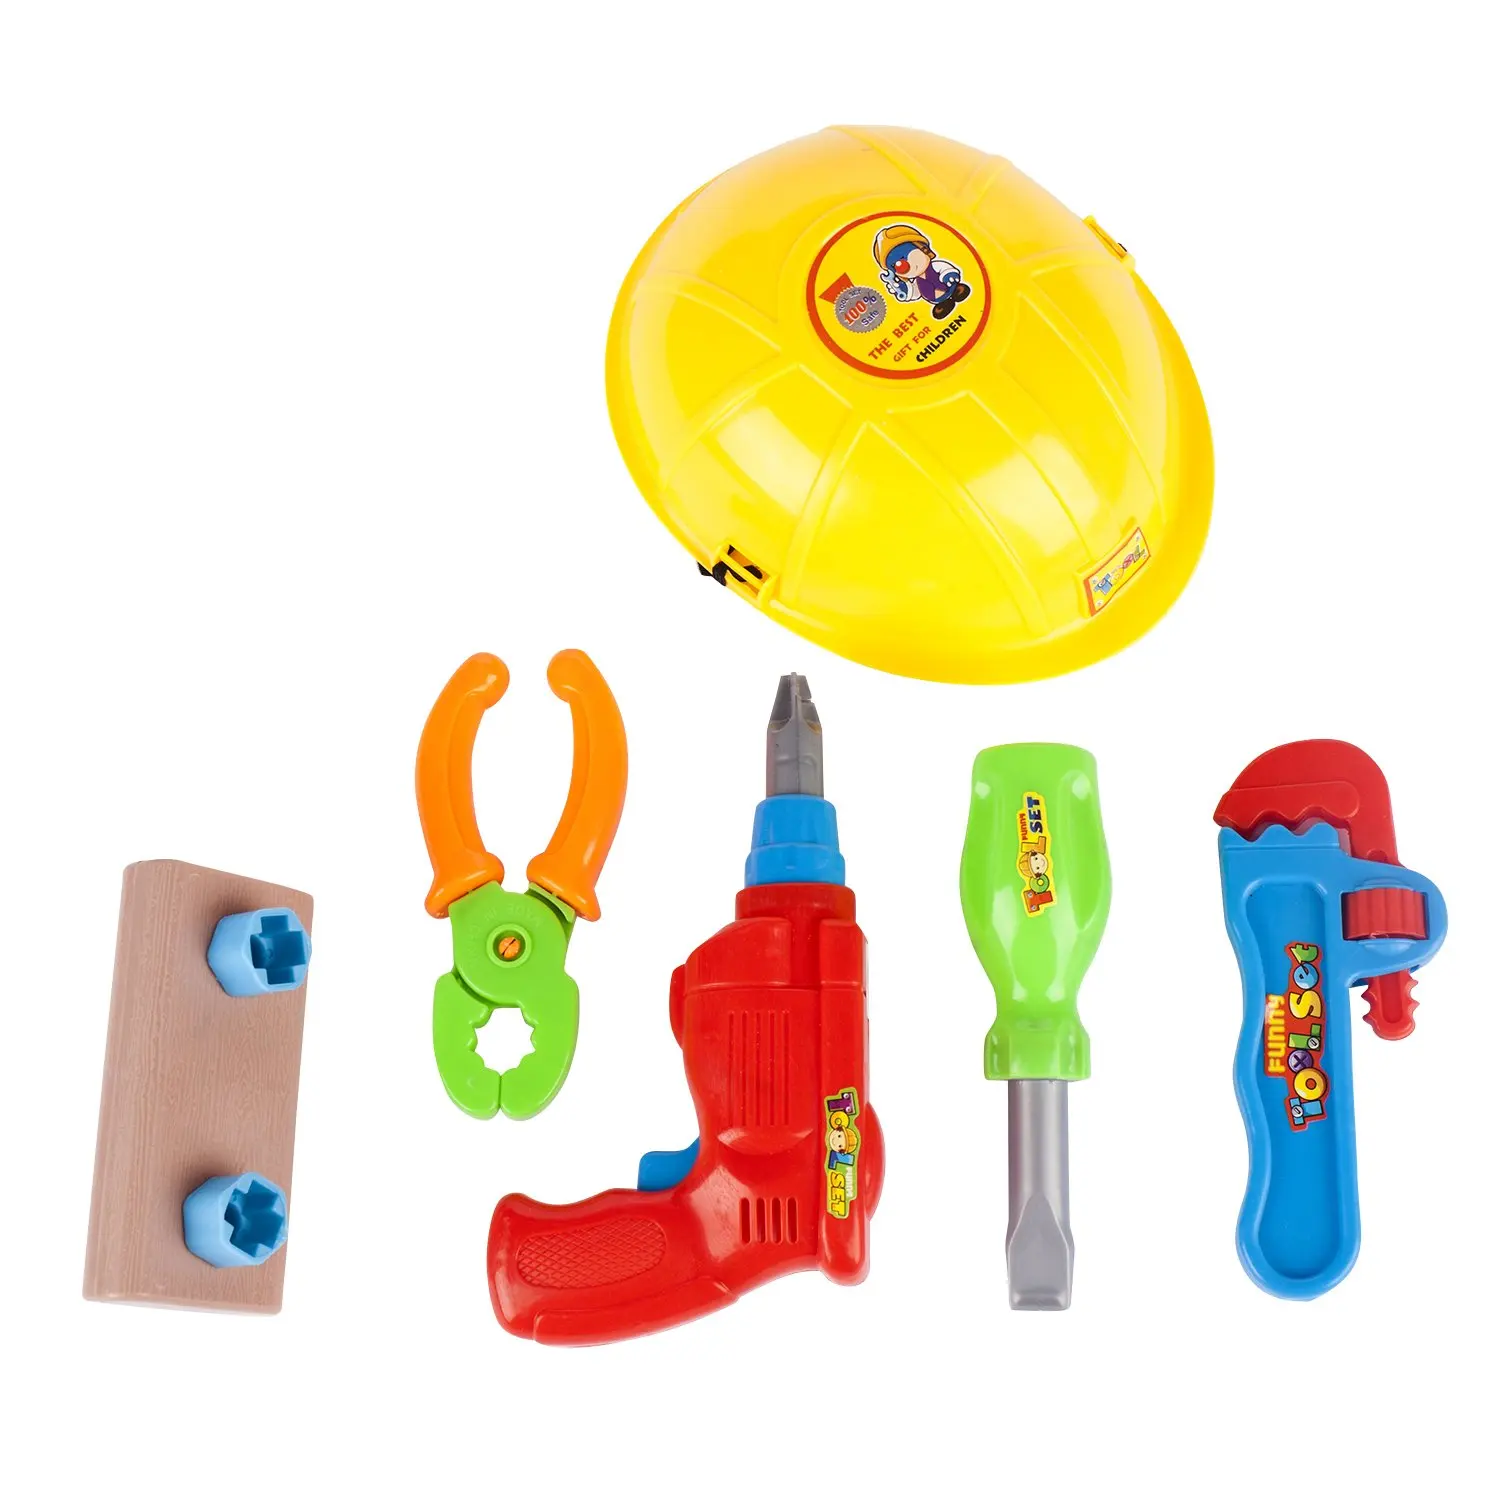 pink toddler tool set